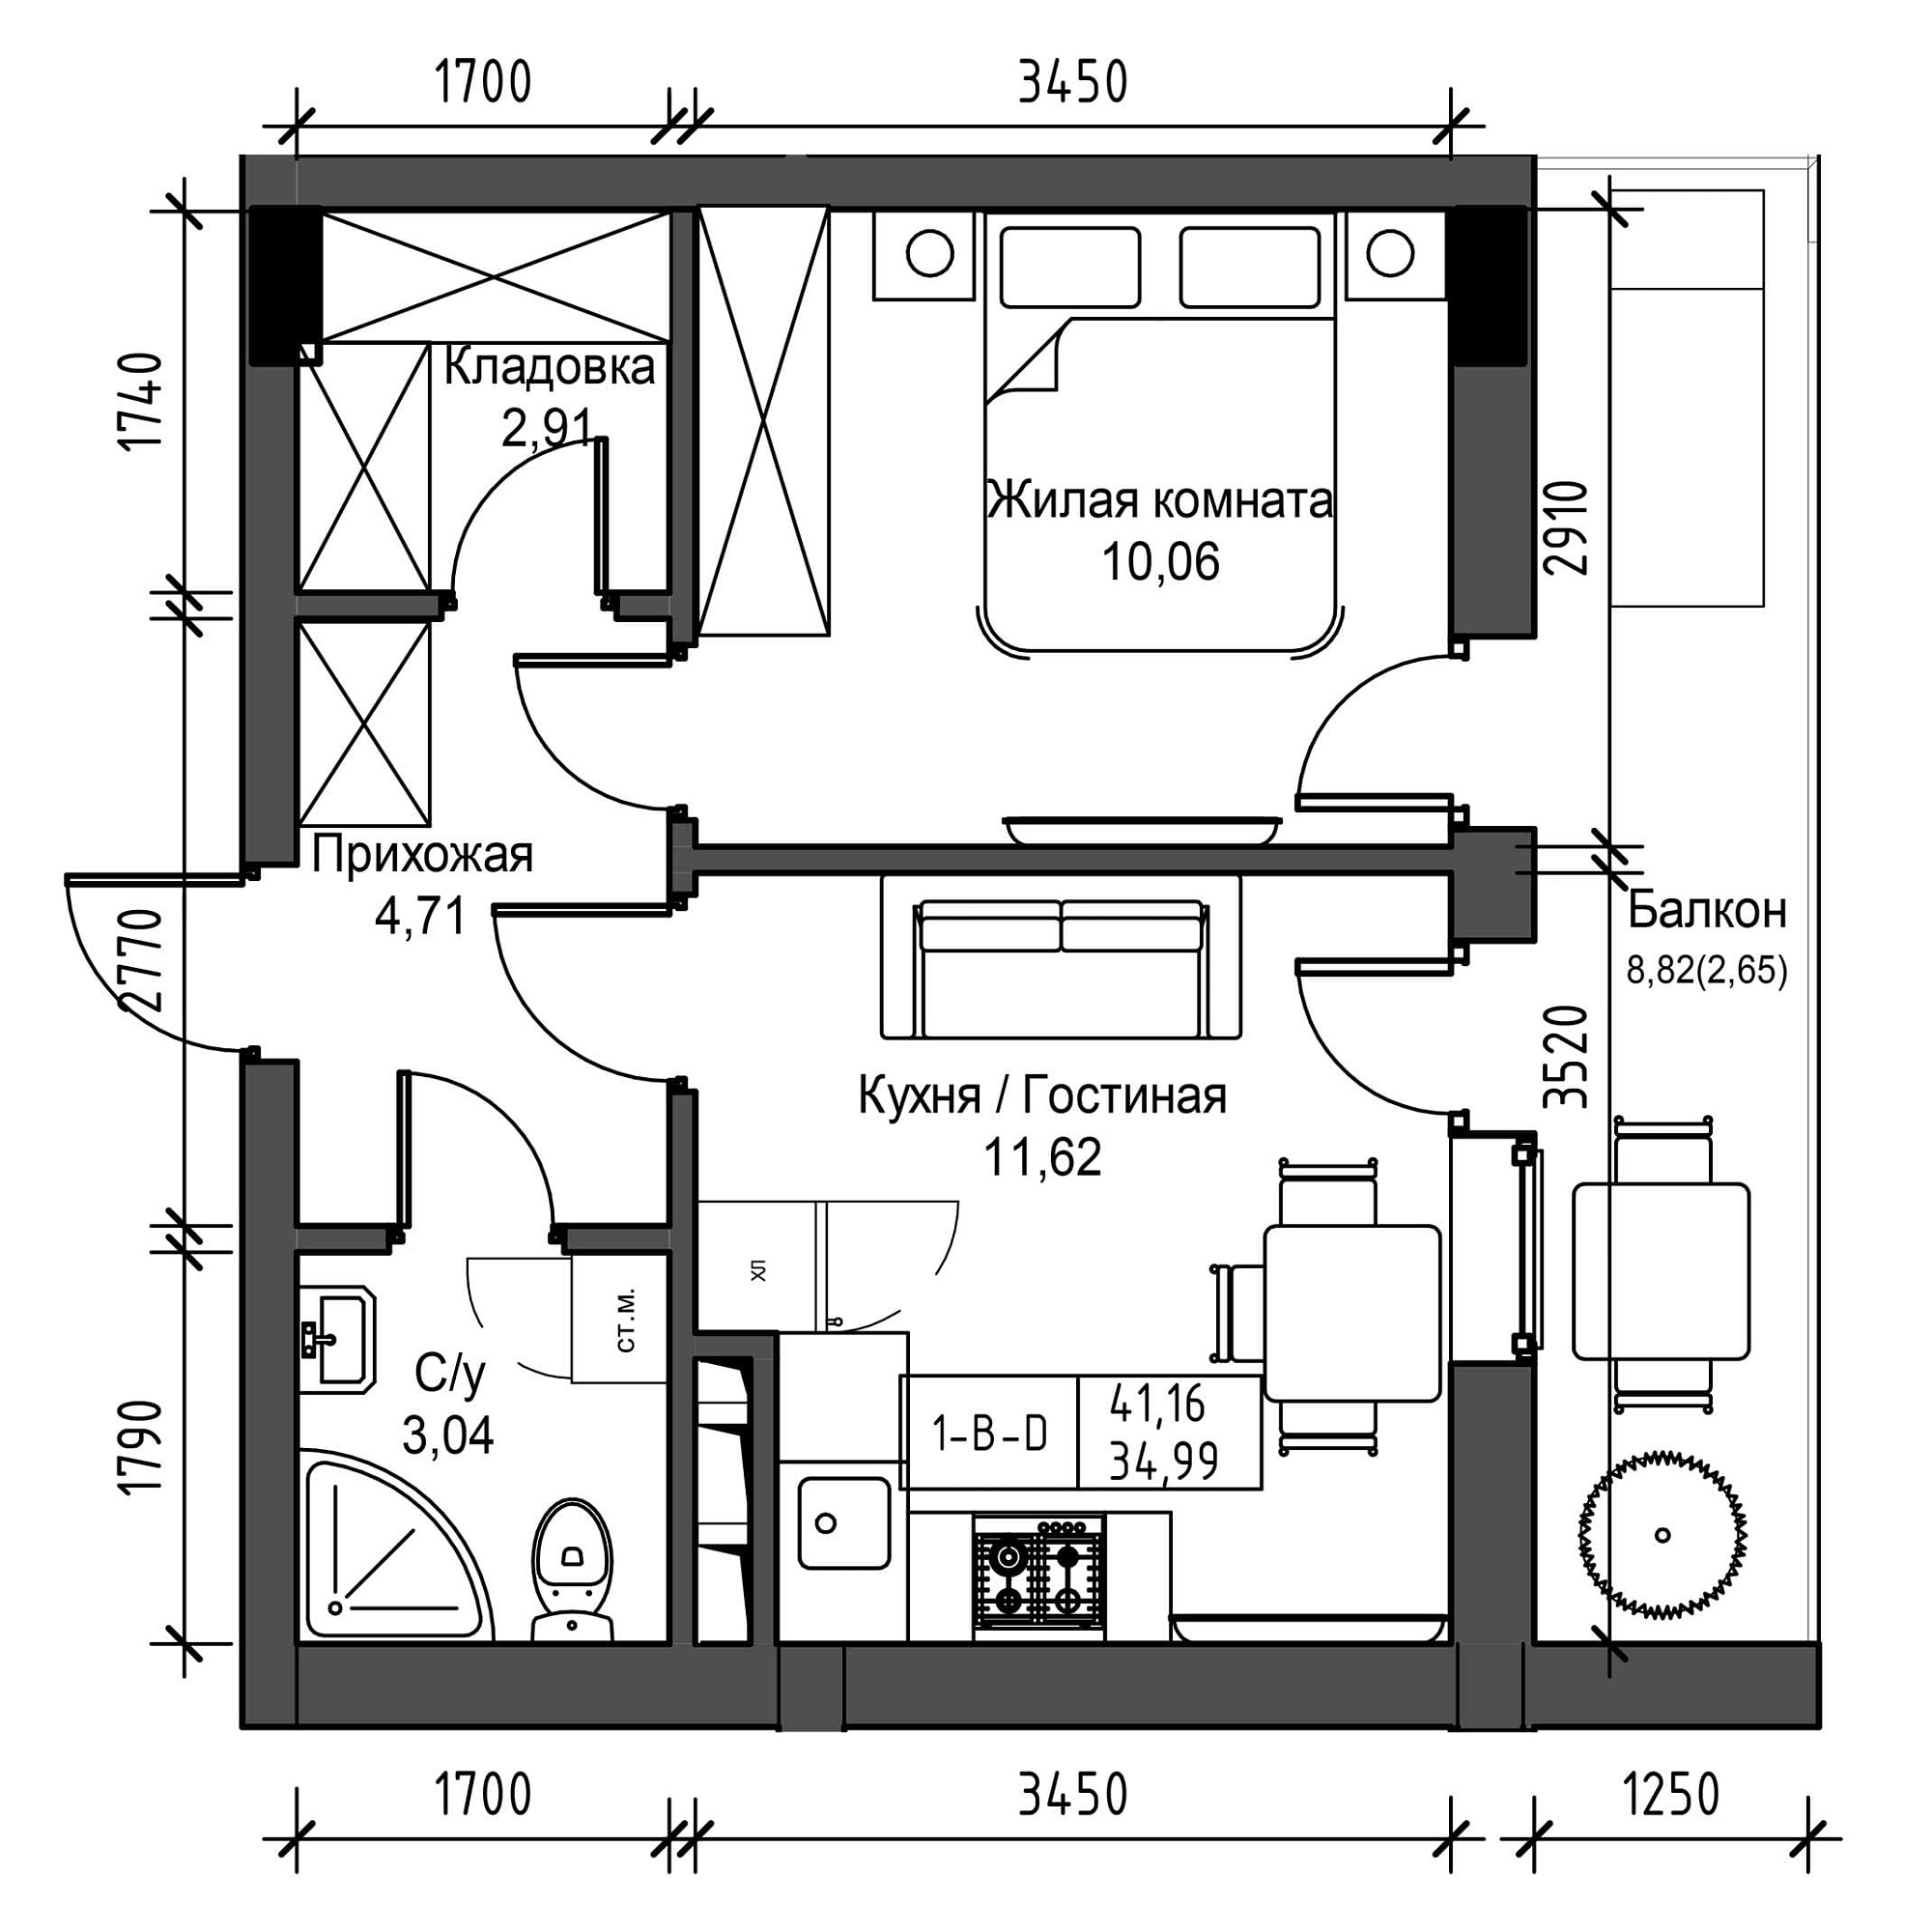 Планировка 1-к квартира площей 34.99м2, UM-001-05/0024.